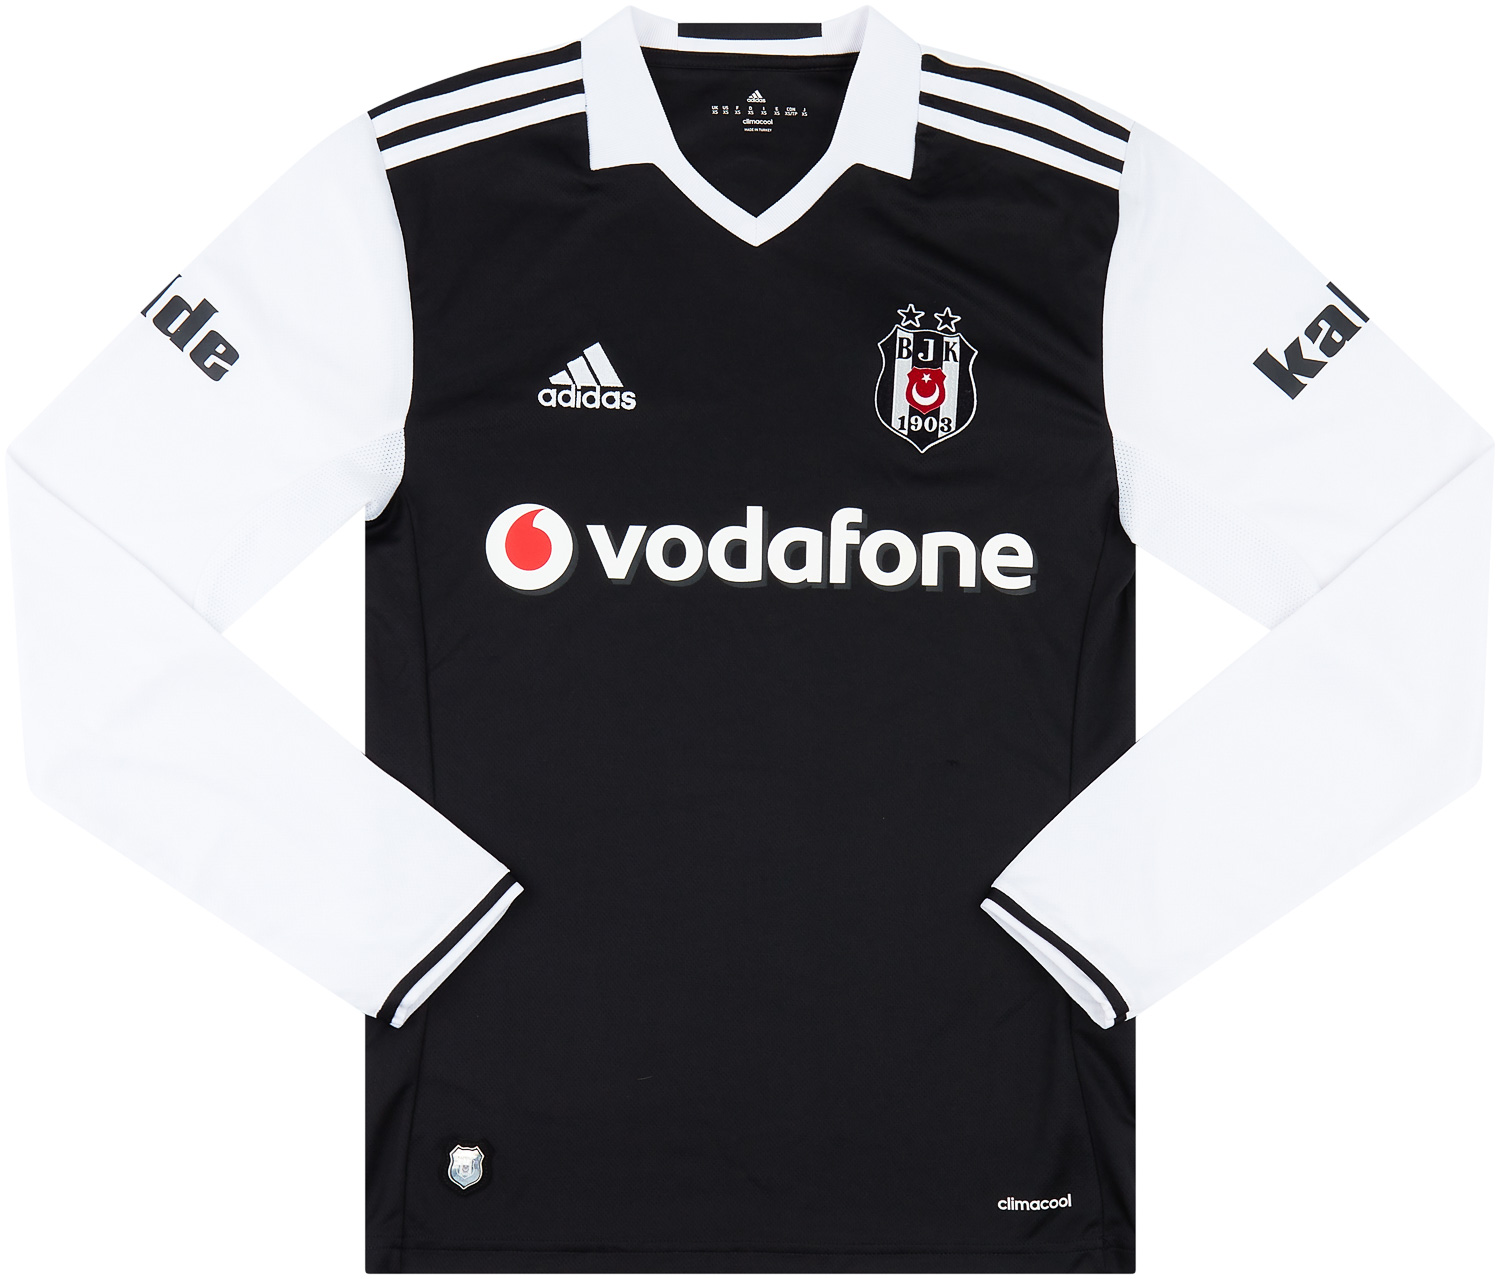 Besiktas Home camisa de futebol 2012 - 2013. Sponsored by Toyota